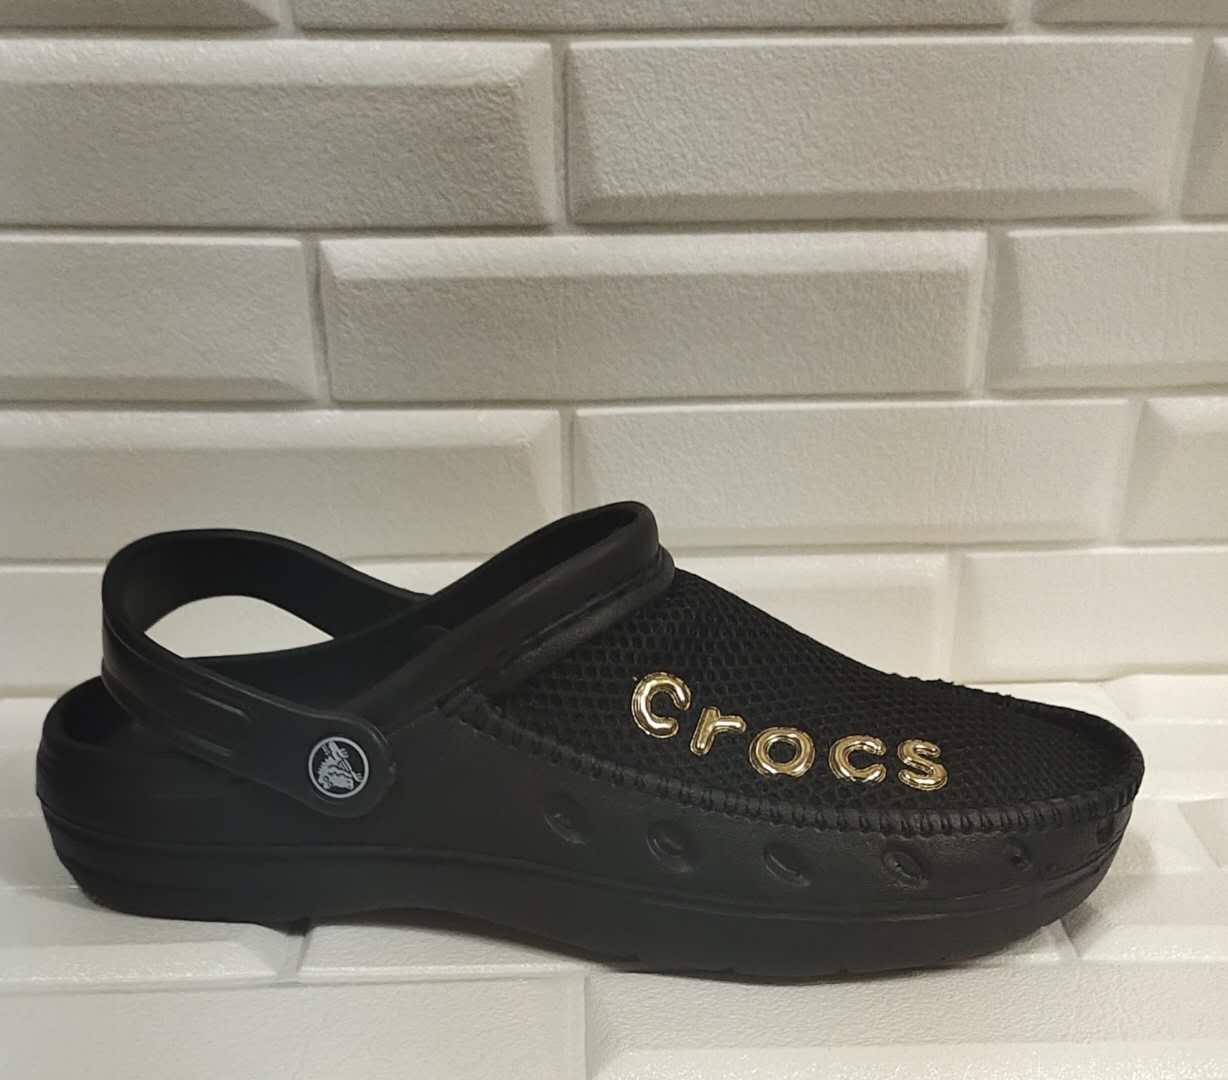 New arrival Crocs men's casual sandals 